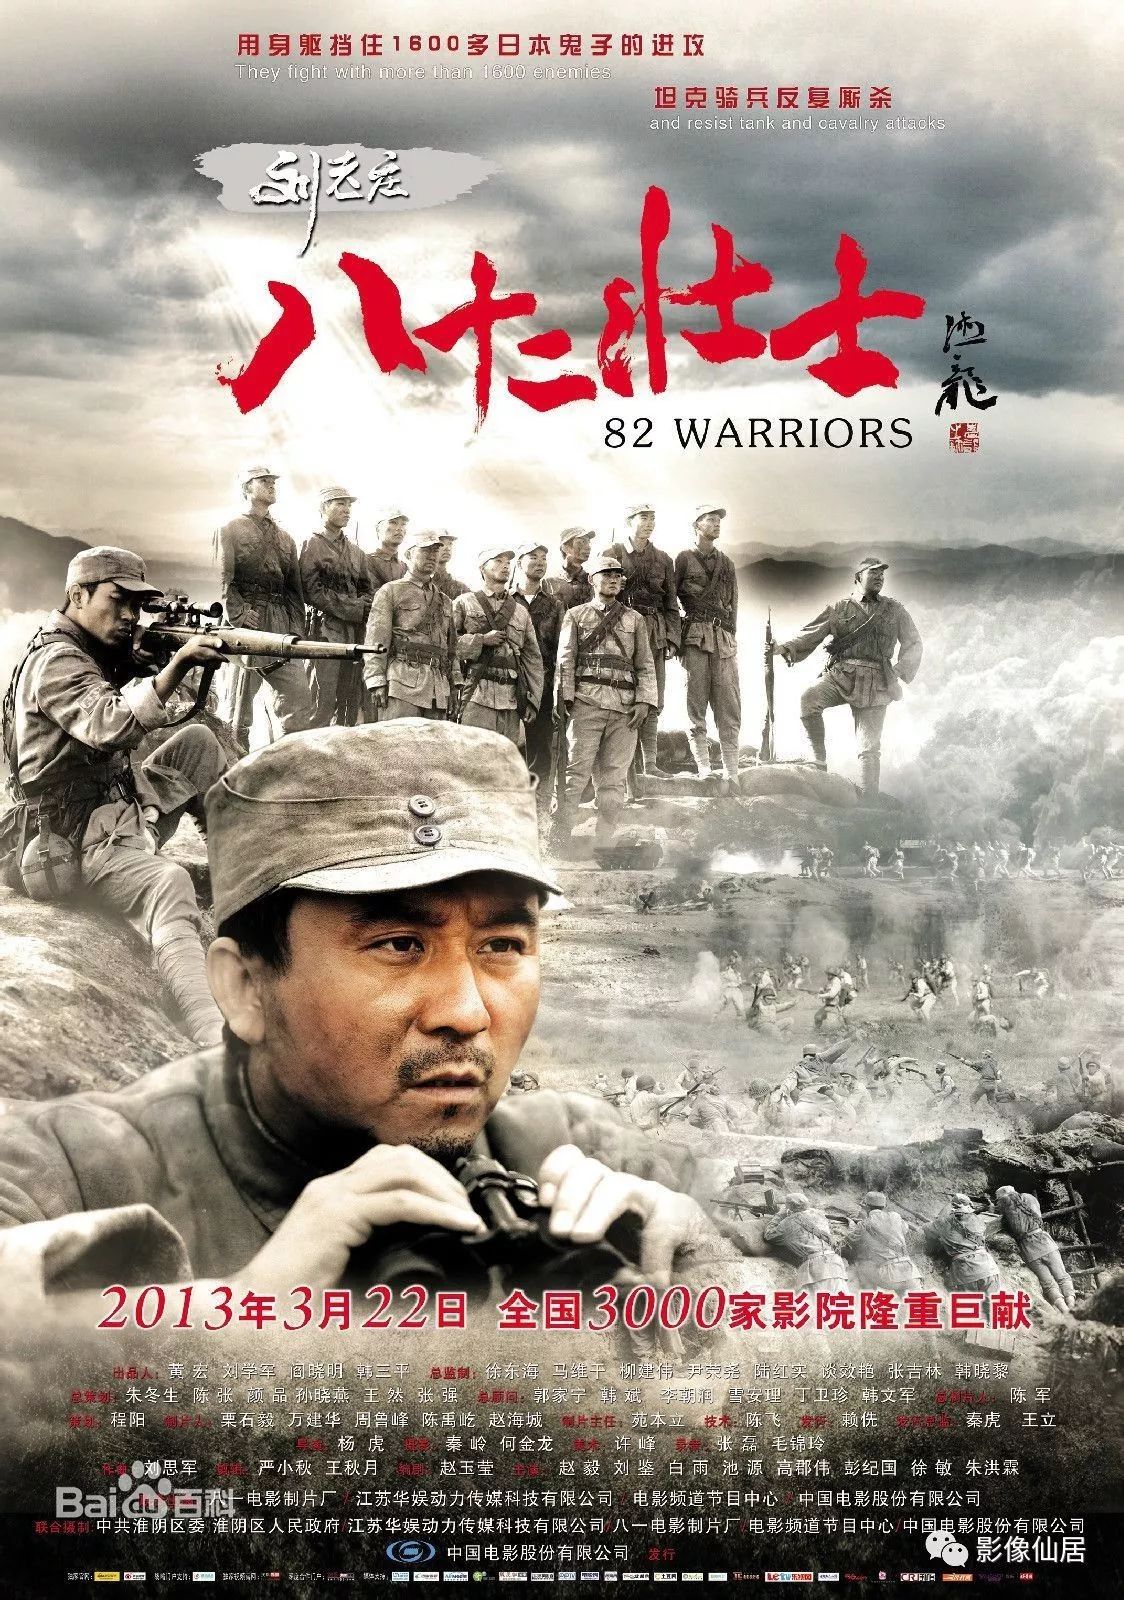 【电影推荐】《刘老庄八十二壮士》一次爱国主义教育